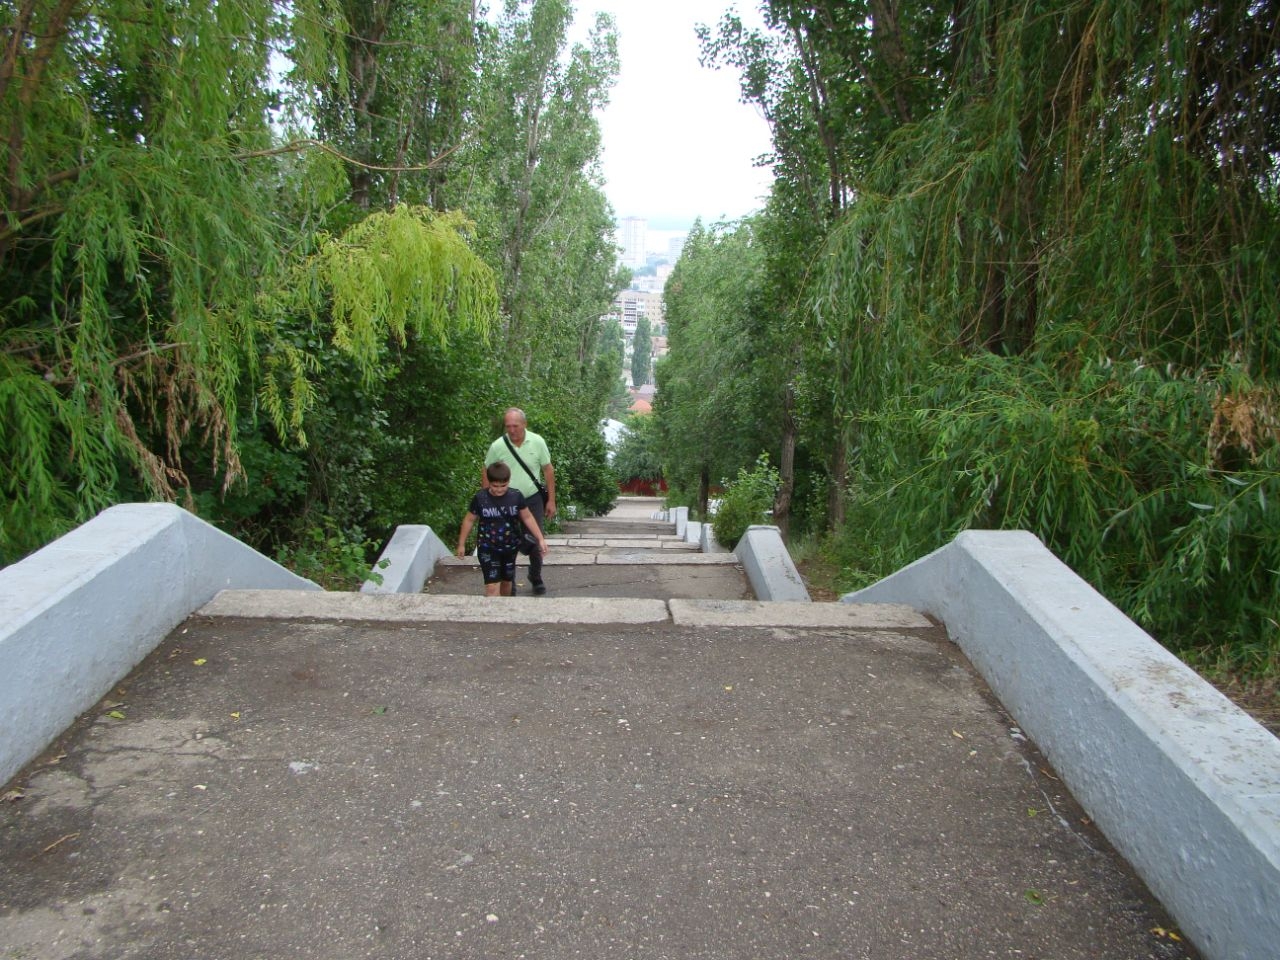 Парк Победы Саратов, Россия